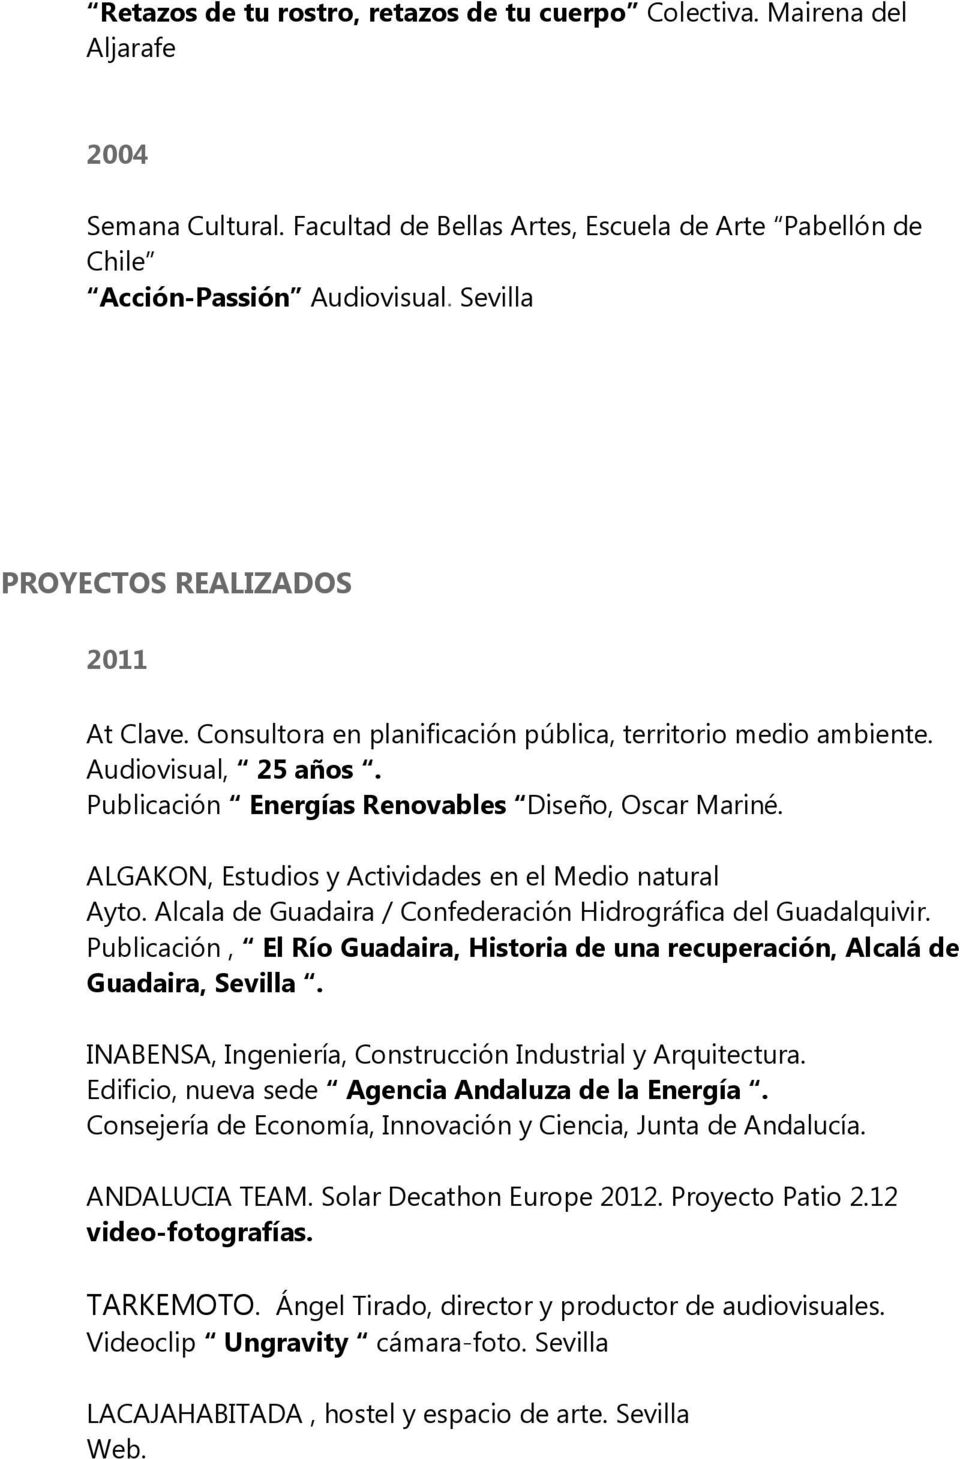 ALGAKON, Estudios y Actividades en el Medio natural Ayto. Alcala de Guadaira / Confederación Hidrográfica del Guadalquivir.